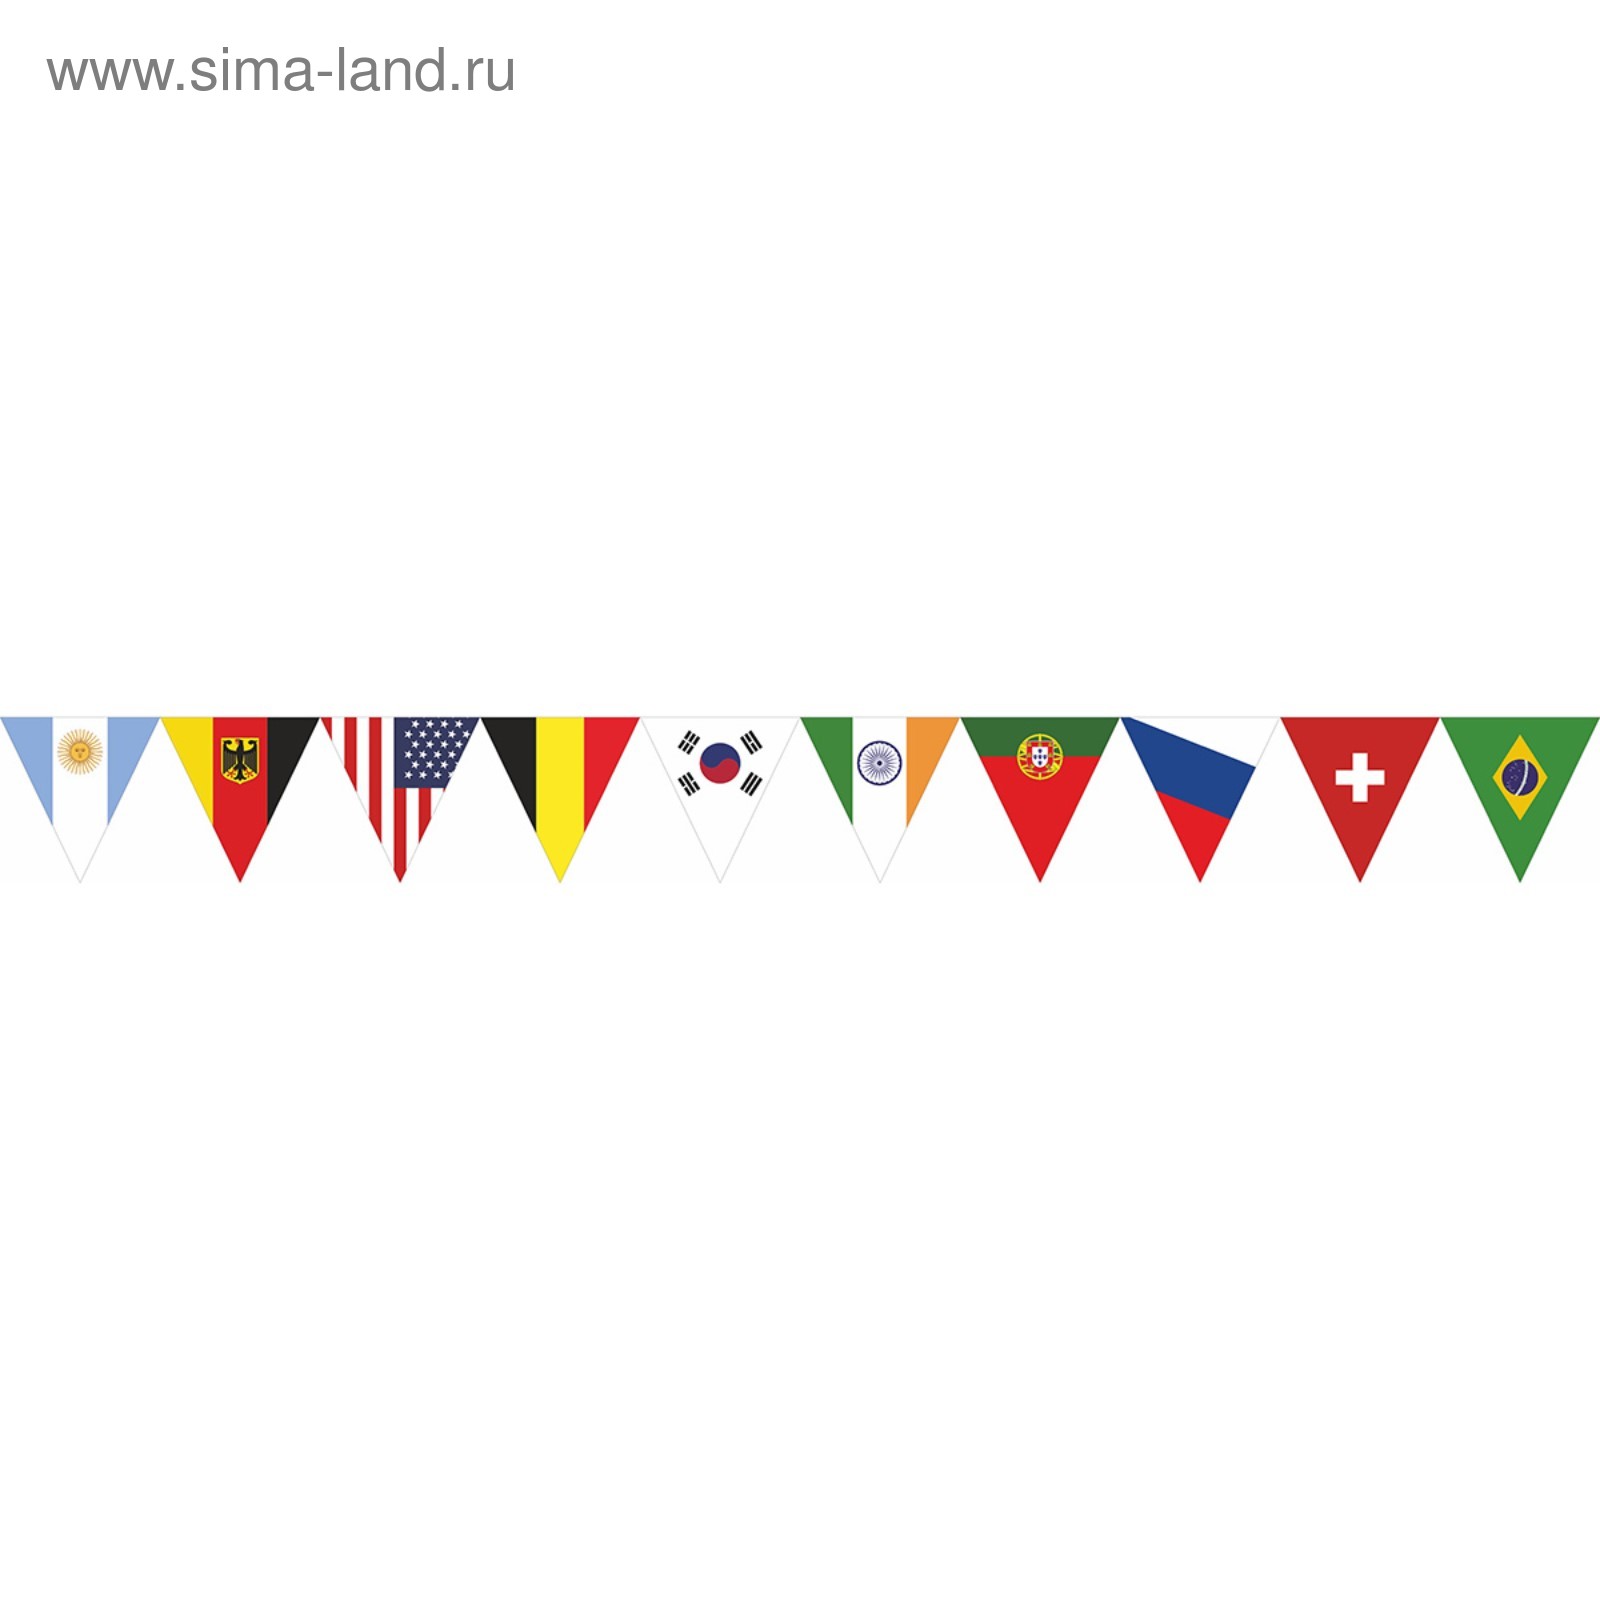 Гирлянда из флагов России, длина 5 м, 10 треугольных флажков 20×30 см, BRAUBERG, 550186